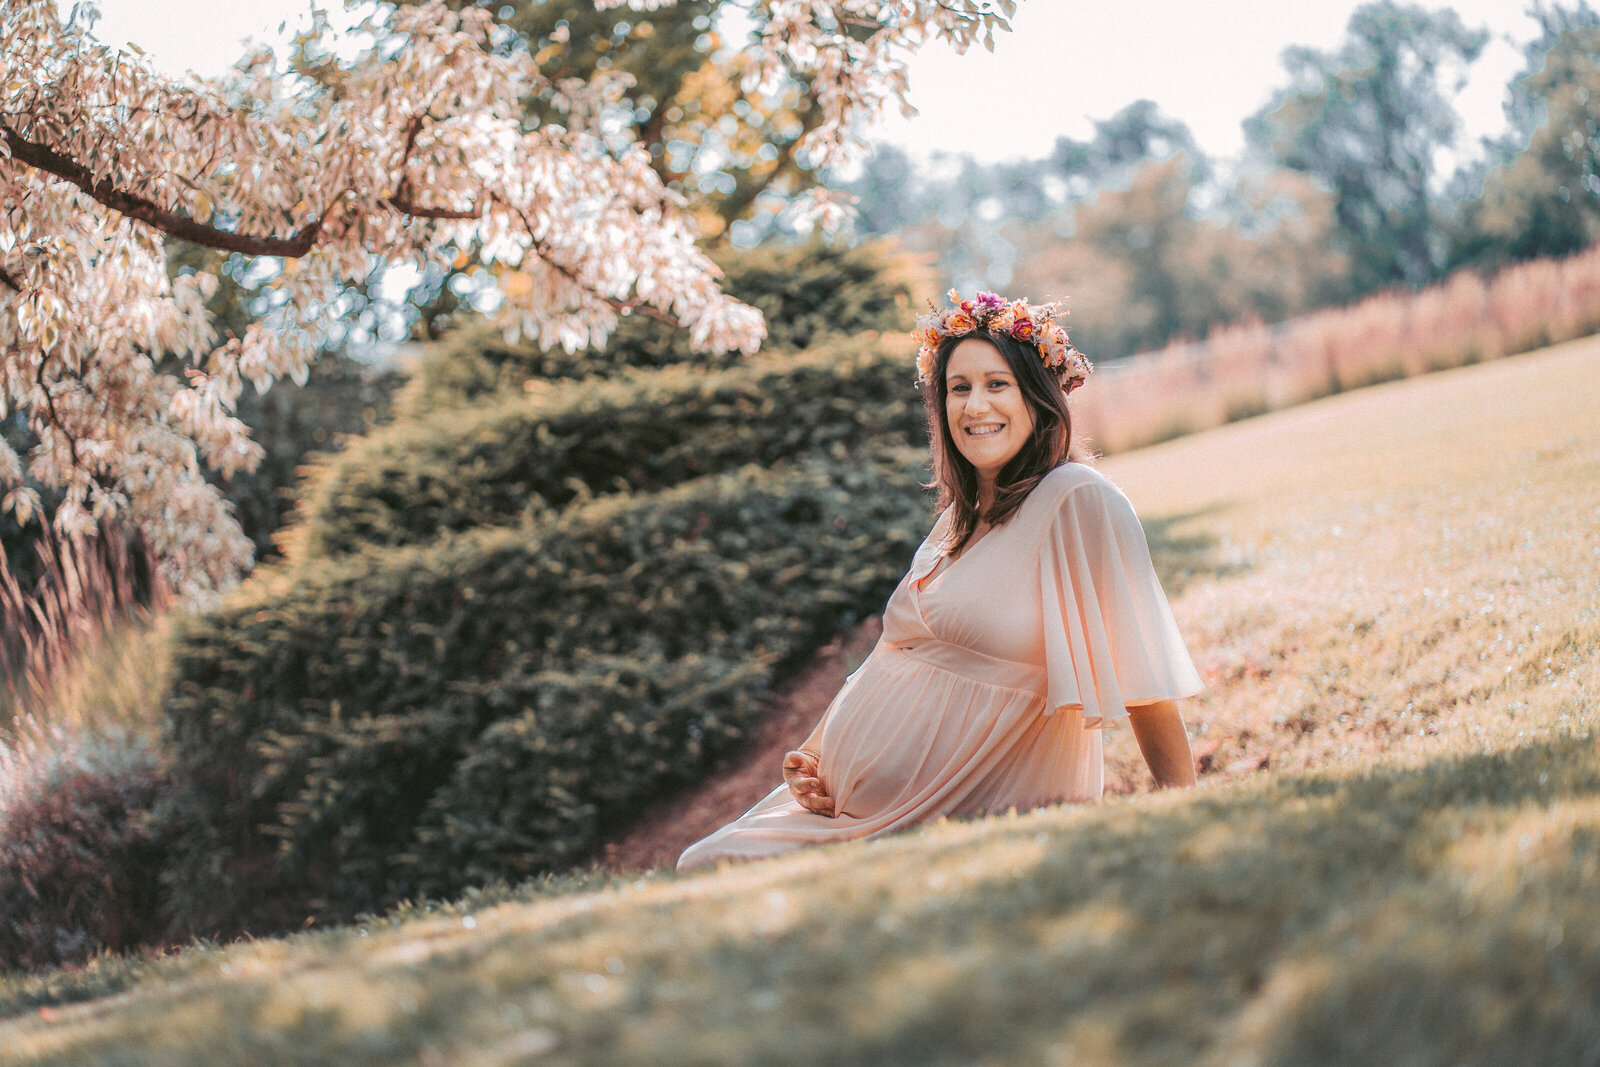 photographe gien grossesse femme enceinte allongée